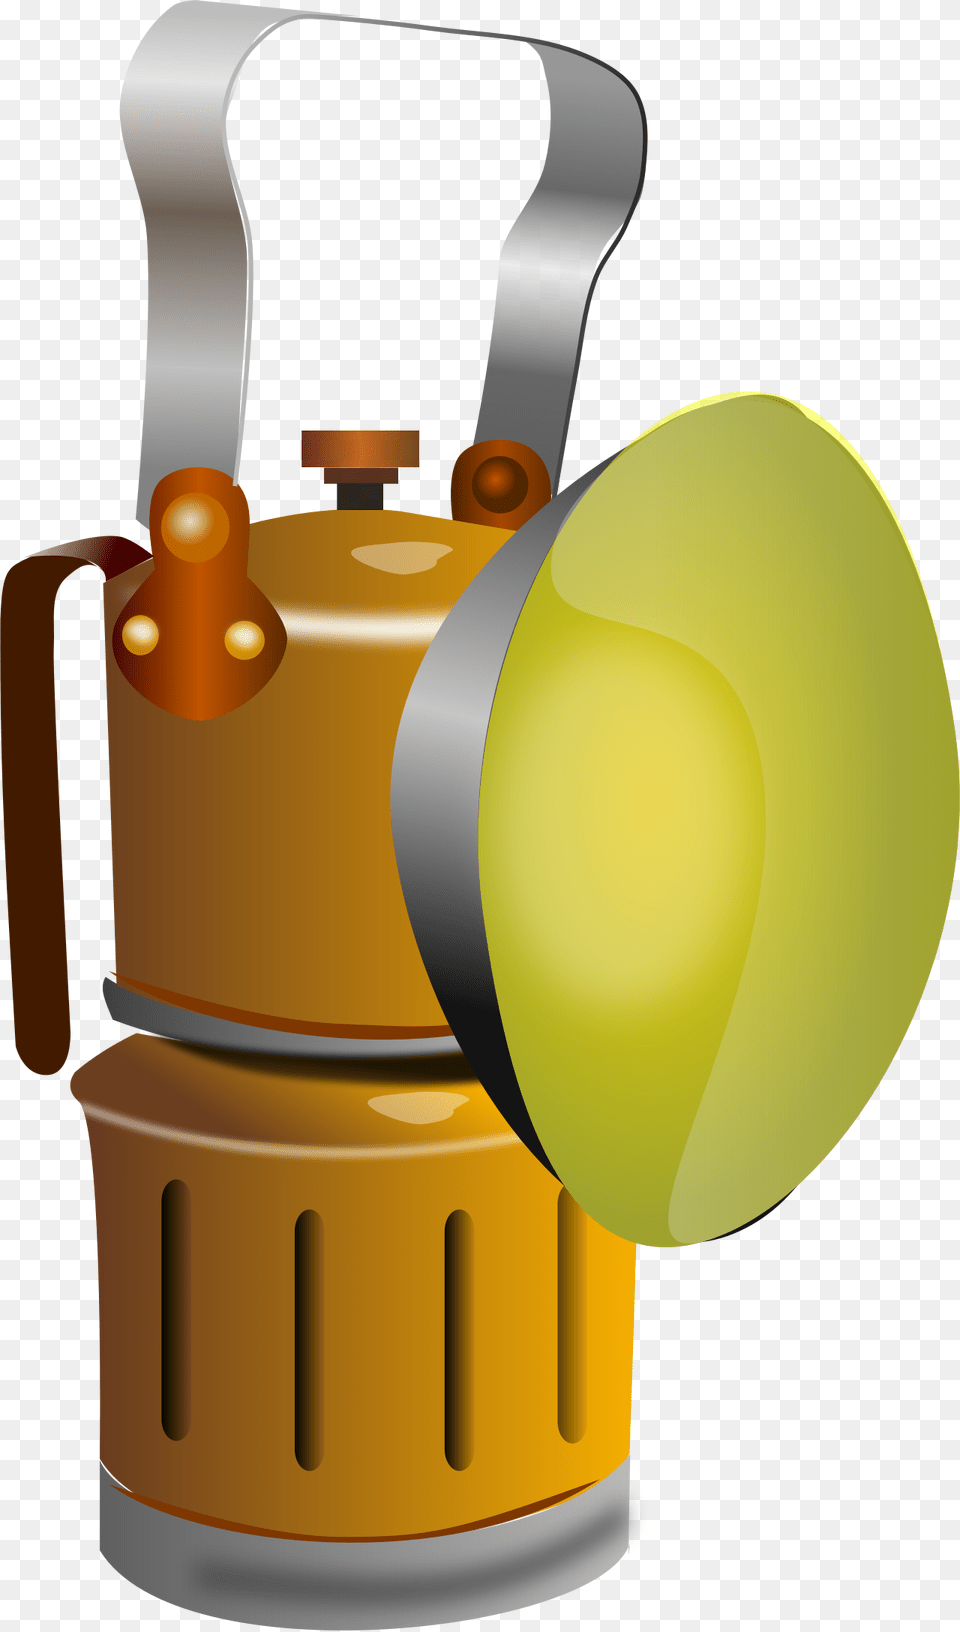 Genie Lamp Clipart Lampara Dibujos De Lamparas De Carburo, Lighting, Ball, Sport, Tennis Free Png Download